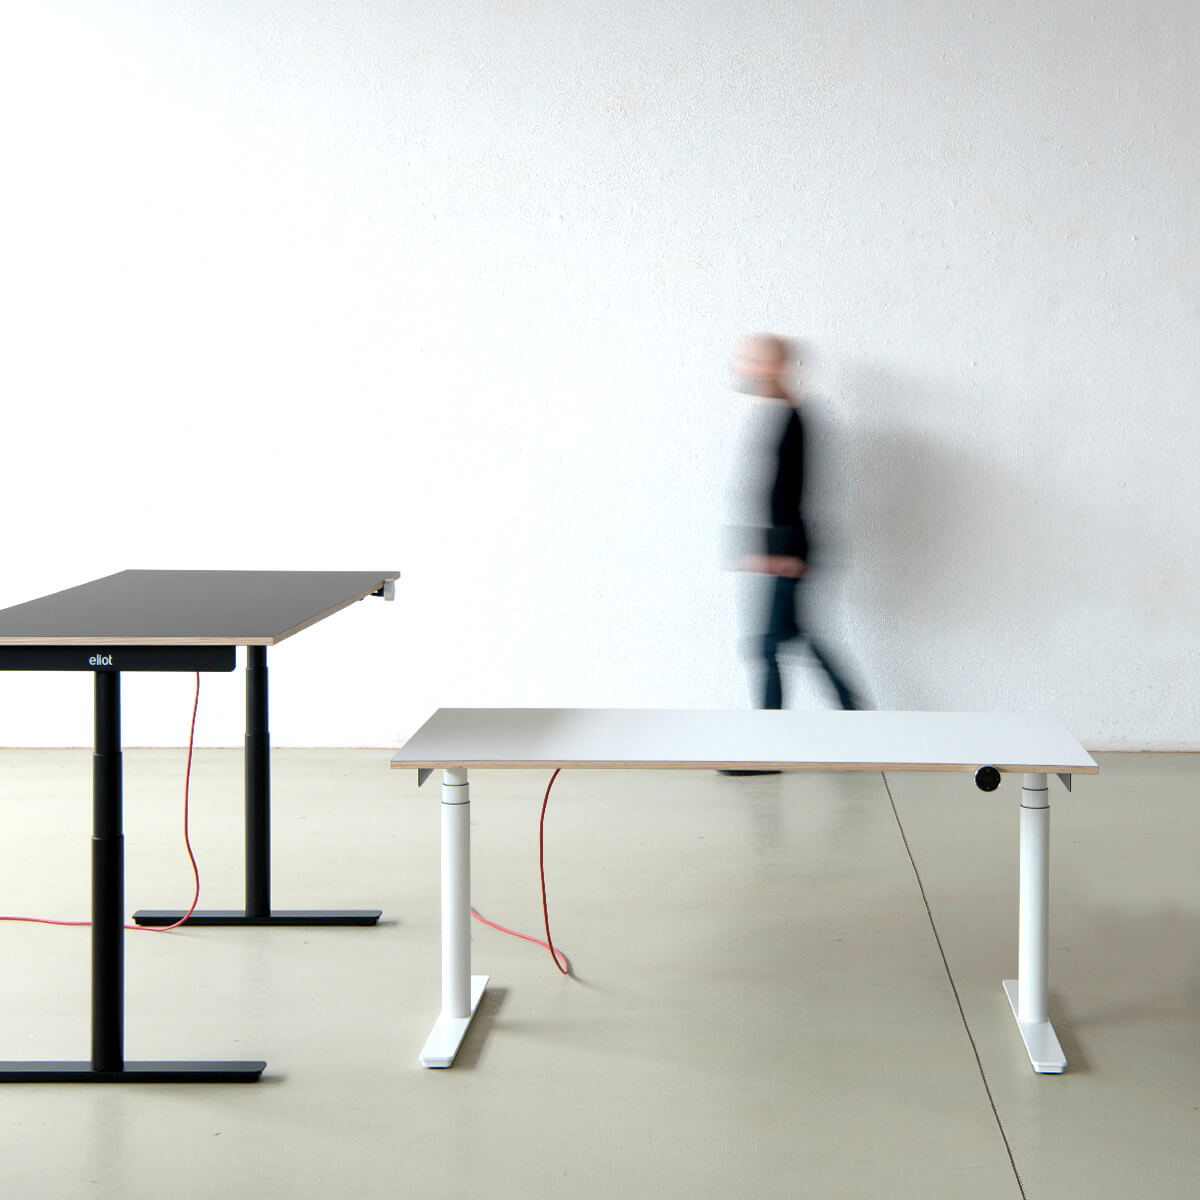 Profil eines schwarzen Eliot-Tisches mit grauer Tischplatte in einem leeren Raum neben einem kleinen Eliot in weiß, im Hintergrund eine verschwommene Person in Bewegung